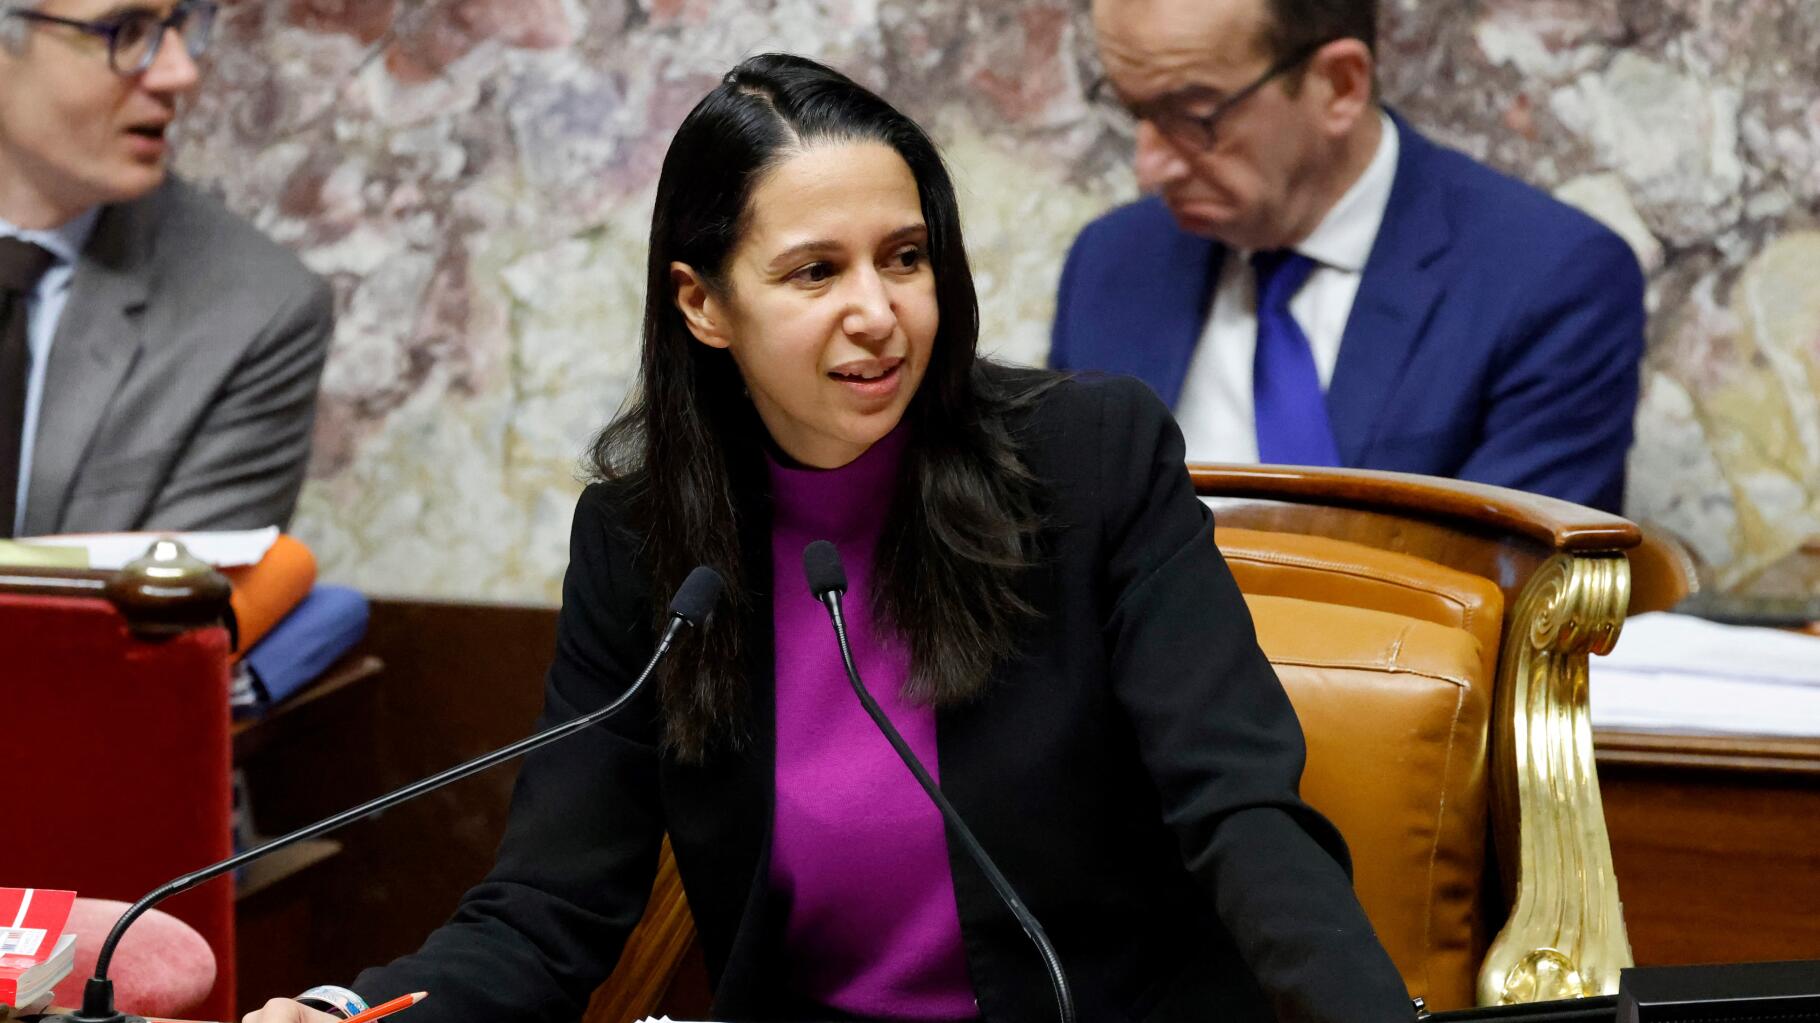   Loi immigration : la députée Naïma Moutchou n’arrange pas les affaires du gouvernement  